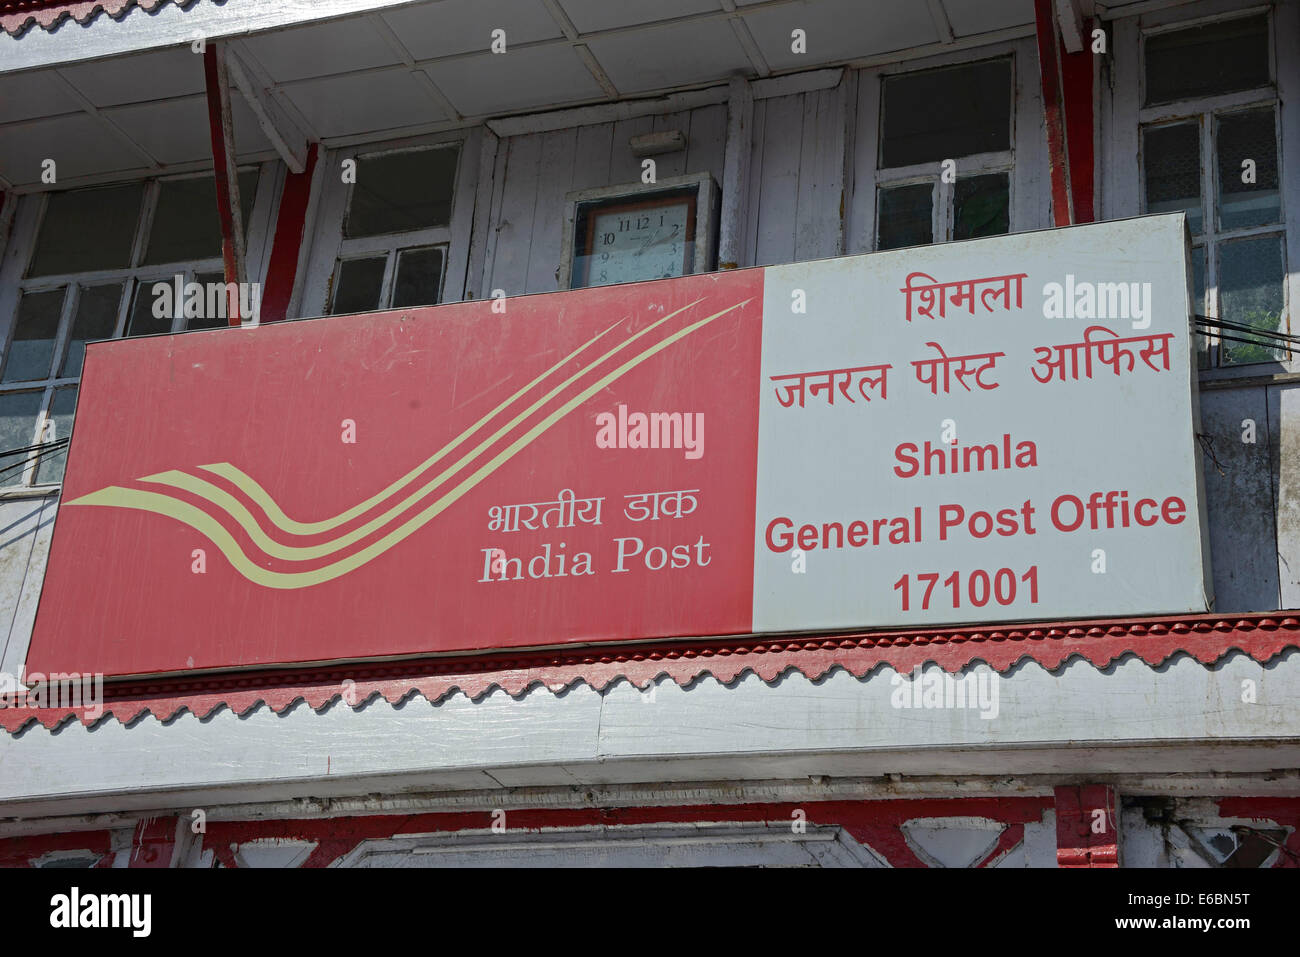 Shimla General post office in Shimla, Himachal Pradesh, India Stock Photo